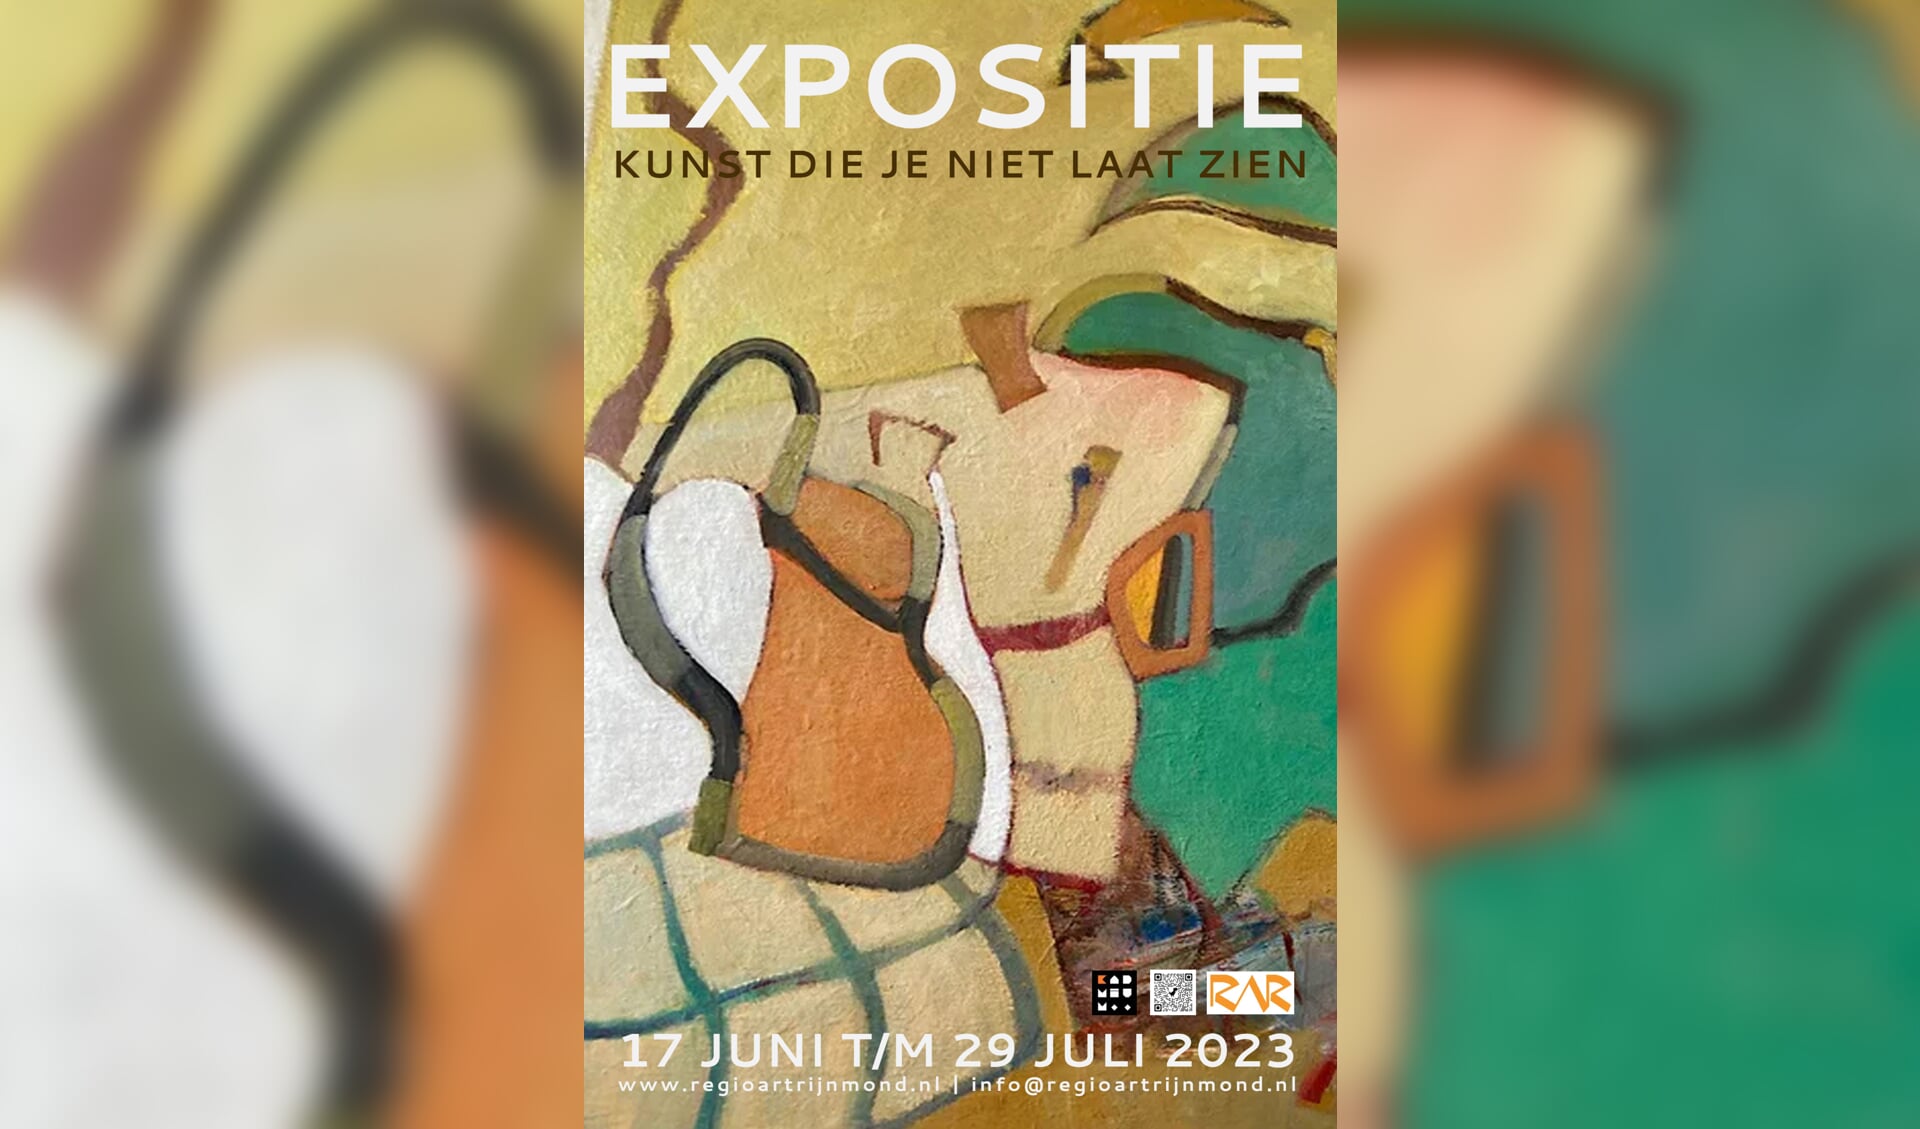 Kadmium kunstenaars tonen werk van 17 juni t/m 29 juli.